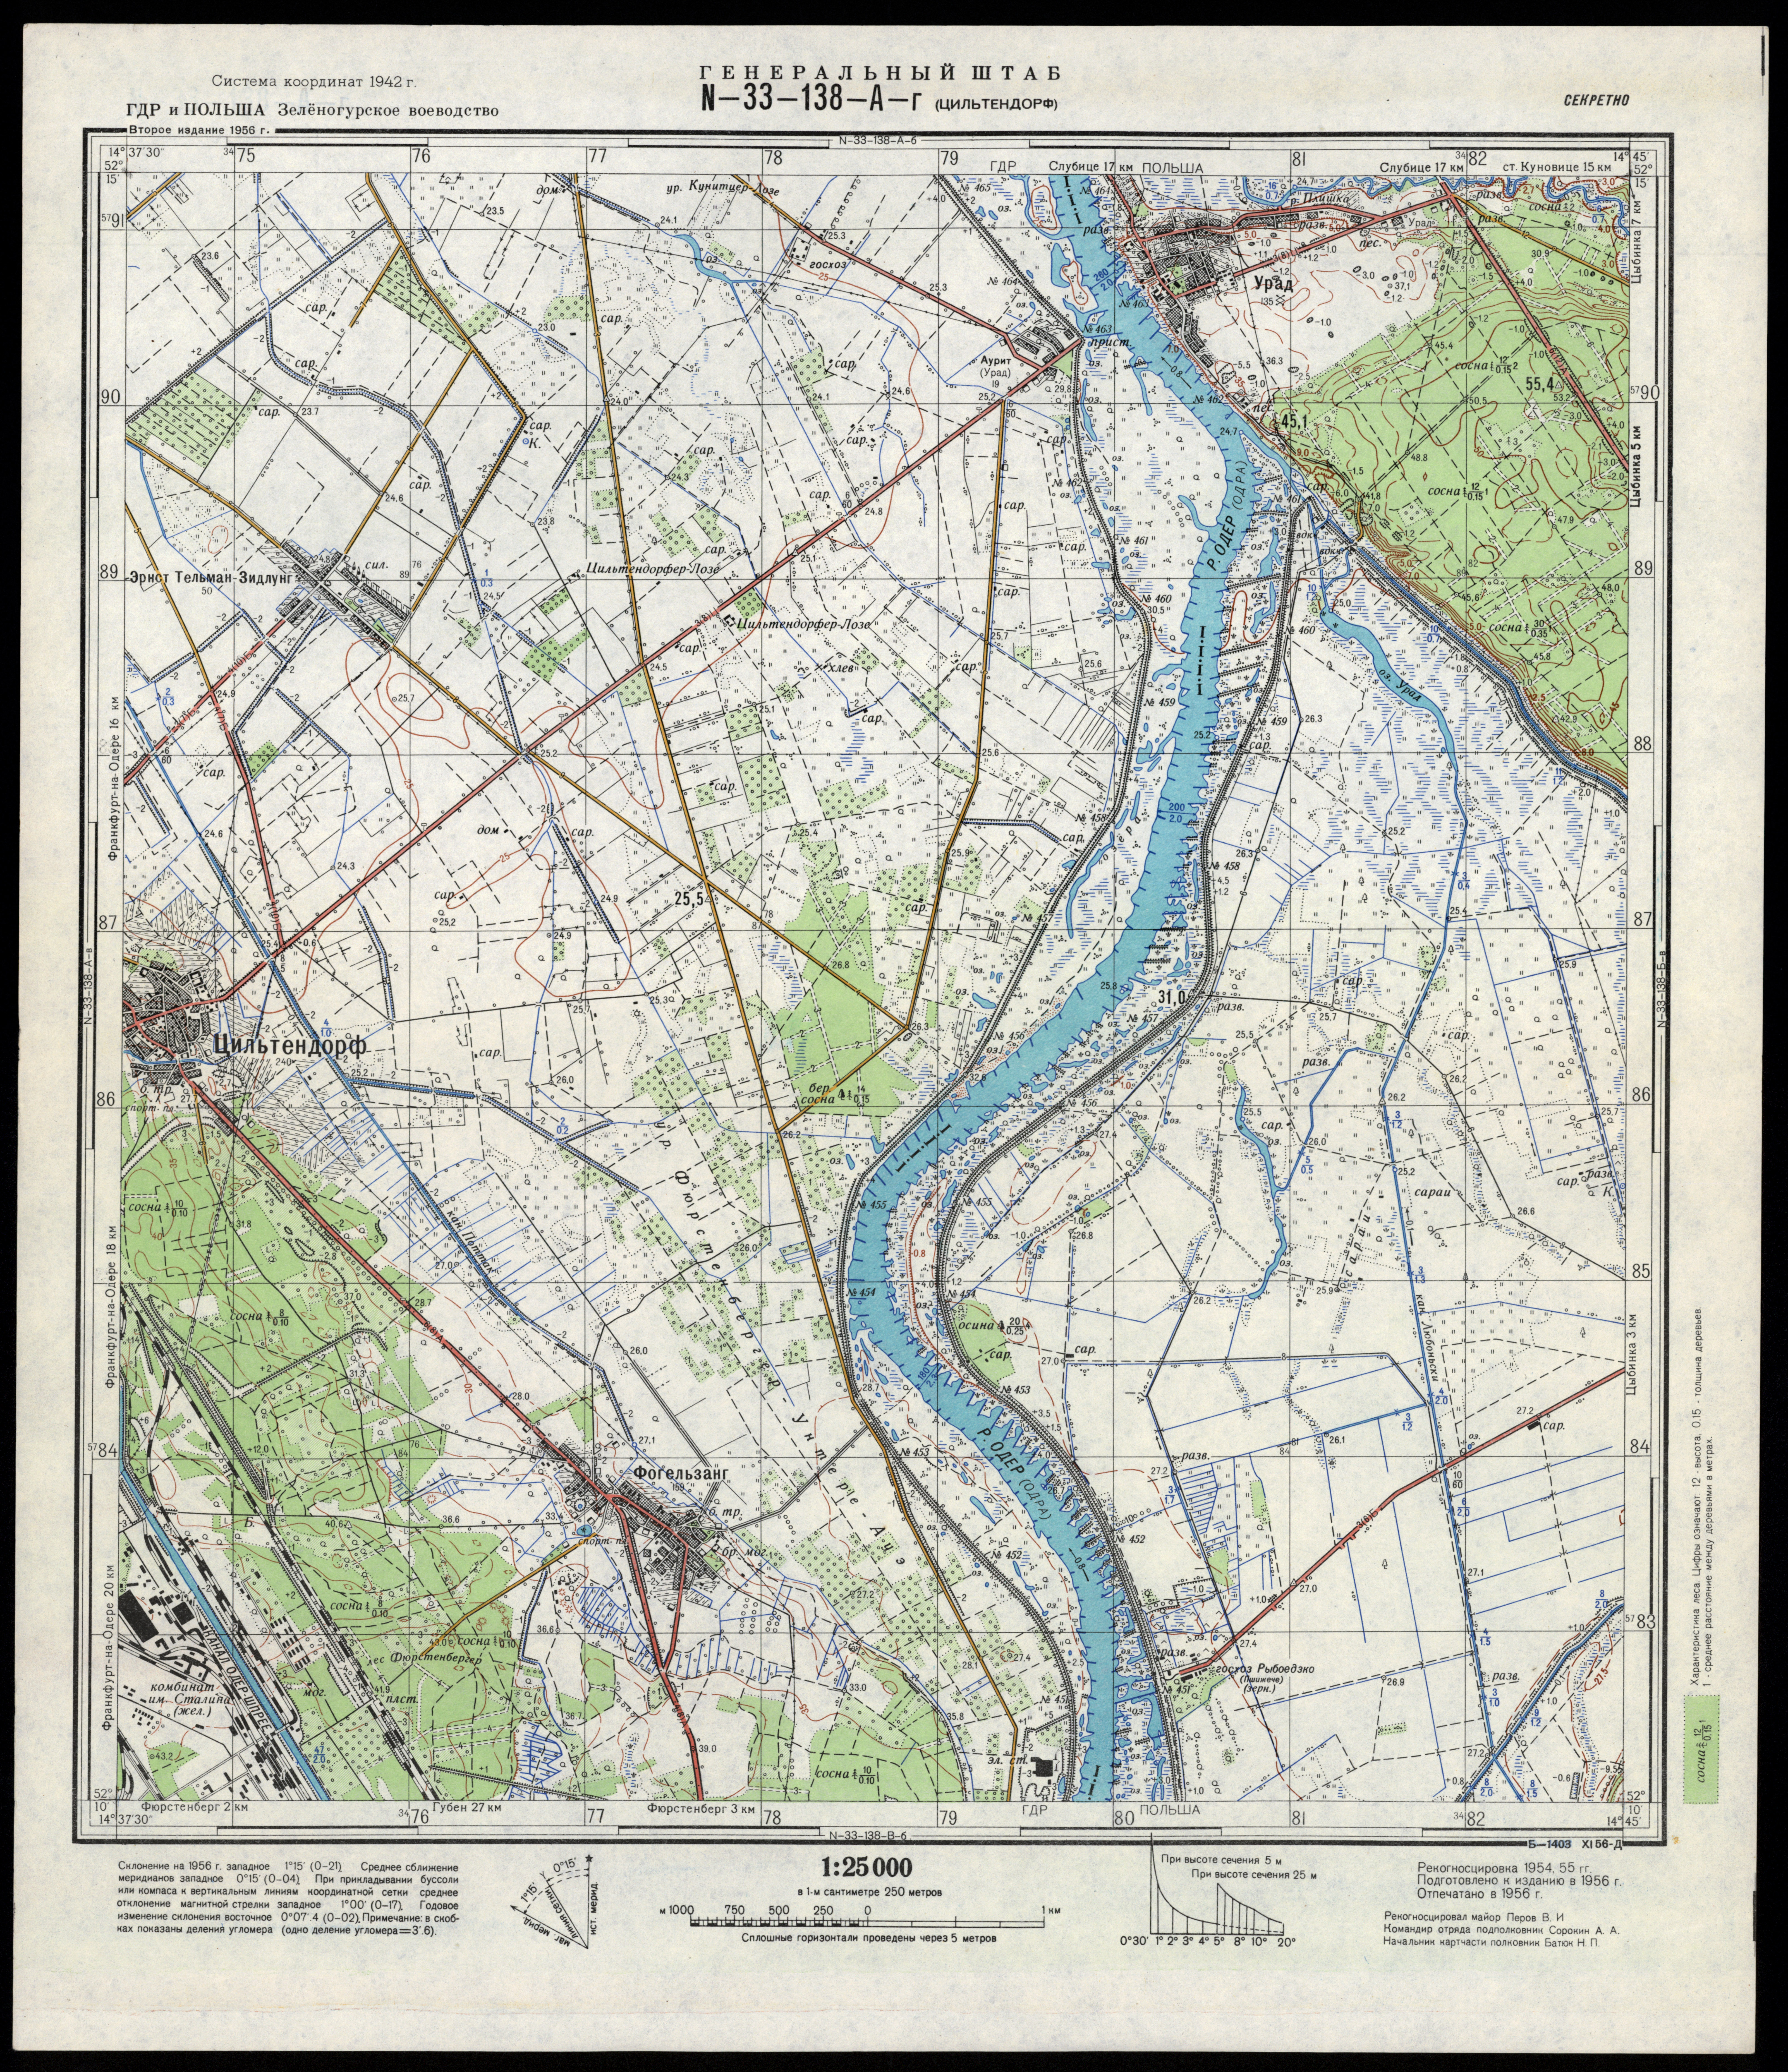 Mapy topograficzne radzieckie 1_25 000 - N-33-138-A-g_CILTENDORF_1956.jpg